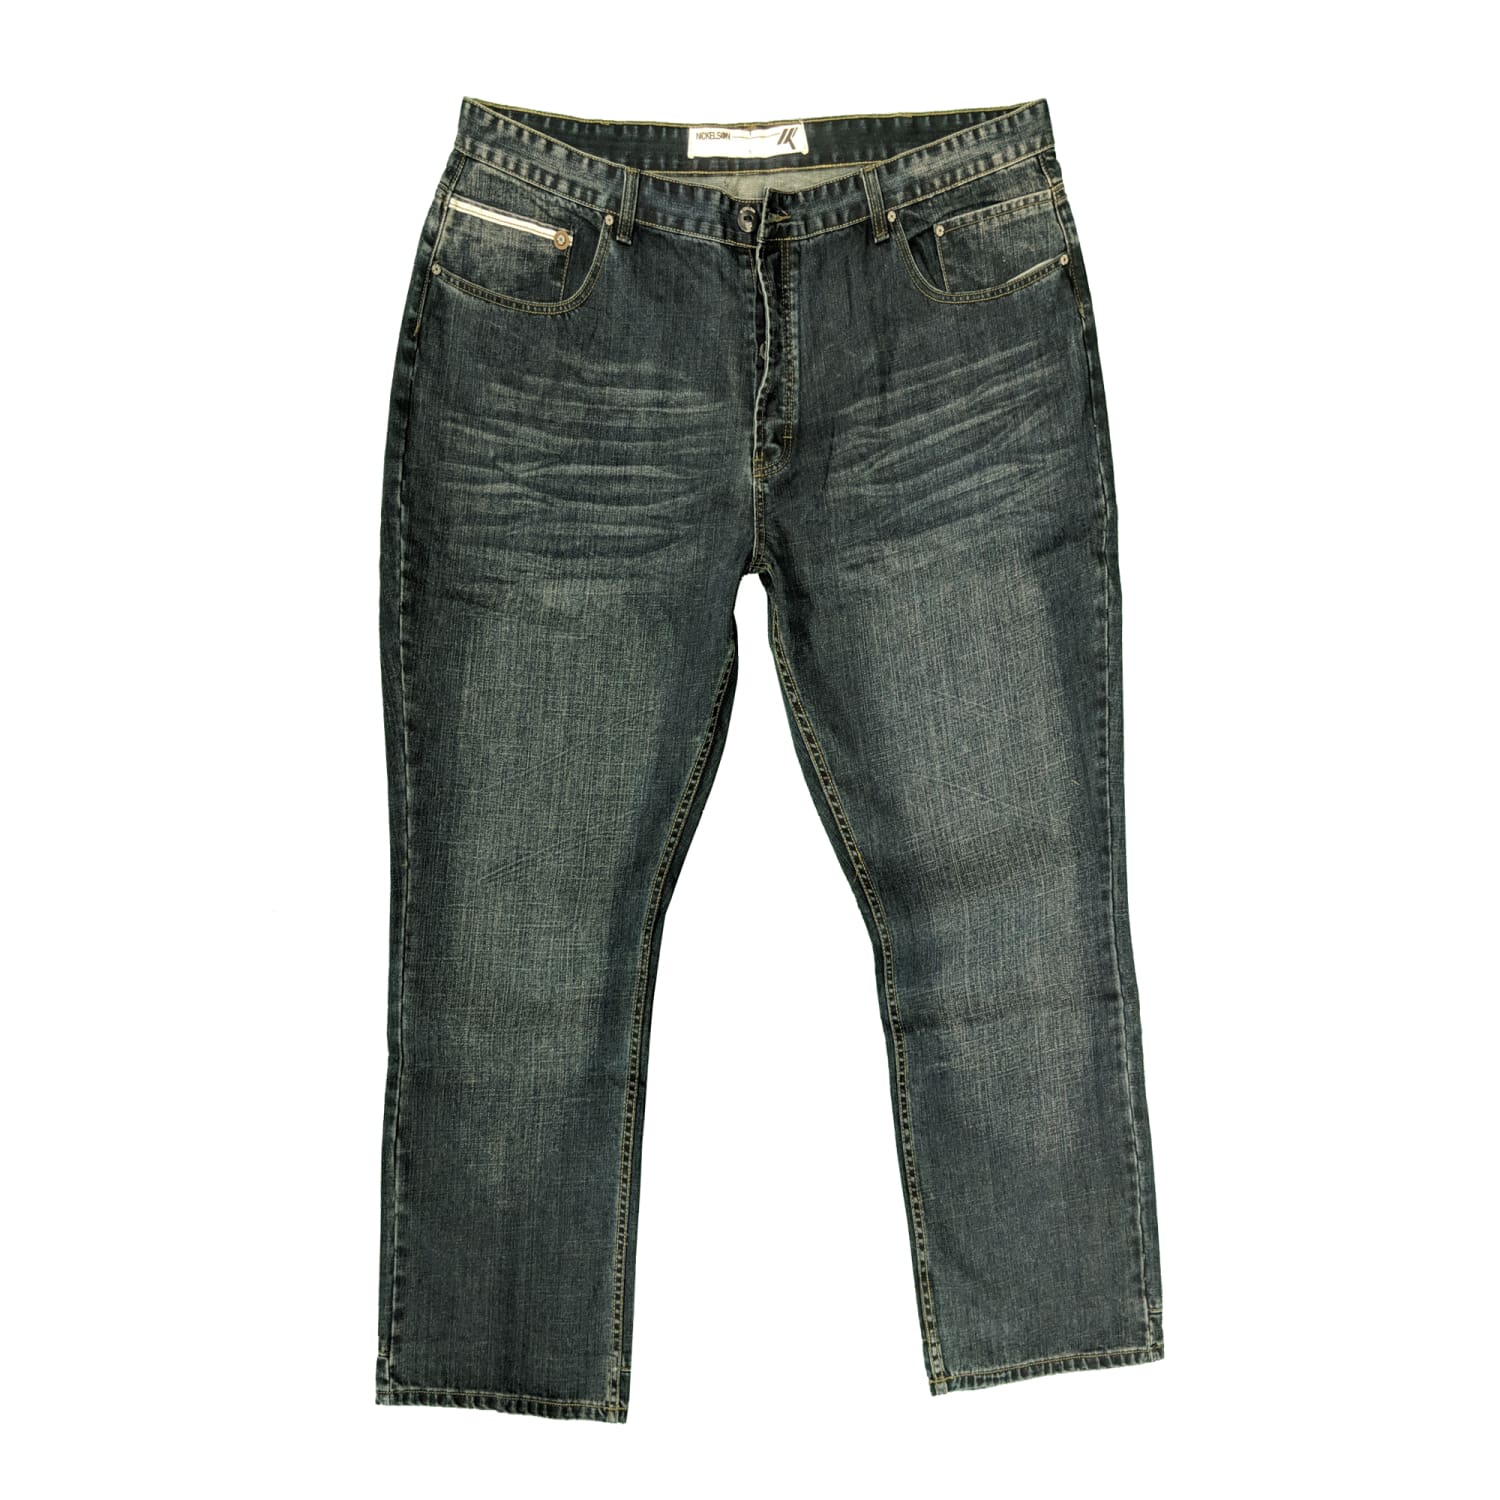 Nickelson Jeans - NMA500 - Blissett - Dark Wash 1